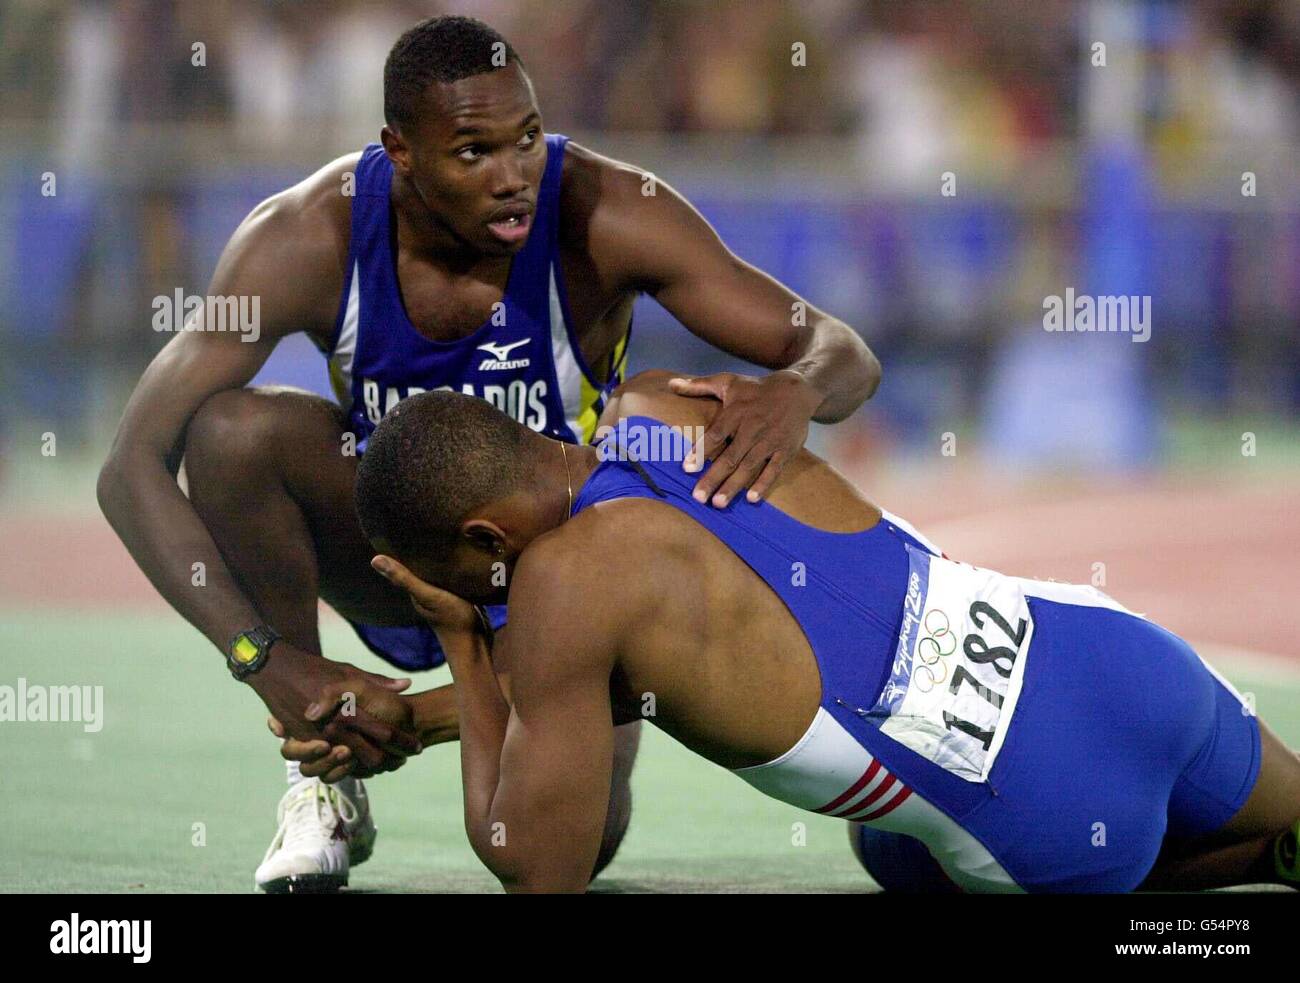 Darren Campbell, en Grande-Bretagne, est sur le plancher tandis que Obadele Thompson, de la Barbade, le félicite pour sa victoire de la médaille d'argent lors de la finale masculine de 200 m aux Jeux Olympiques de Sydney. Banque D'Images